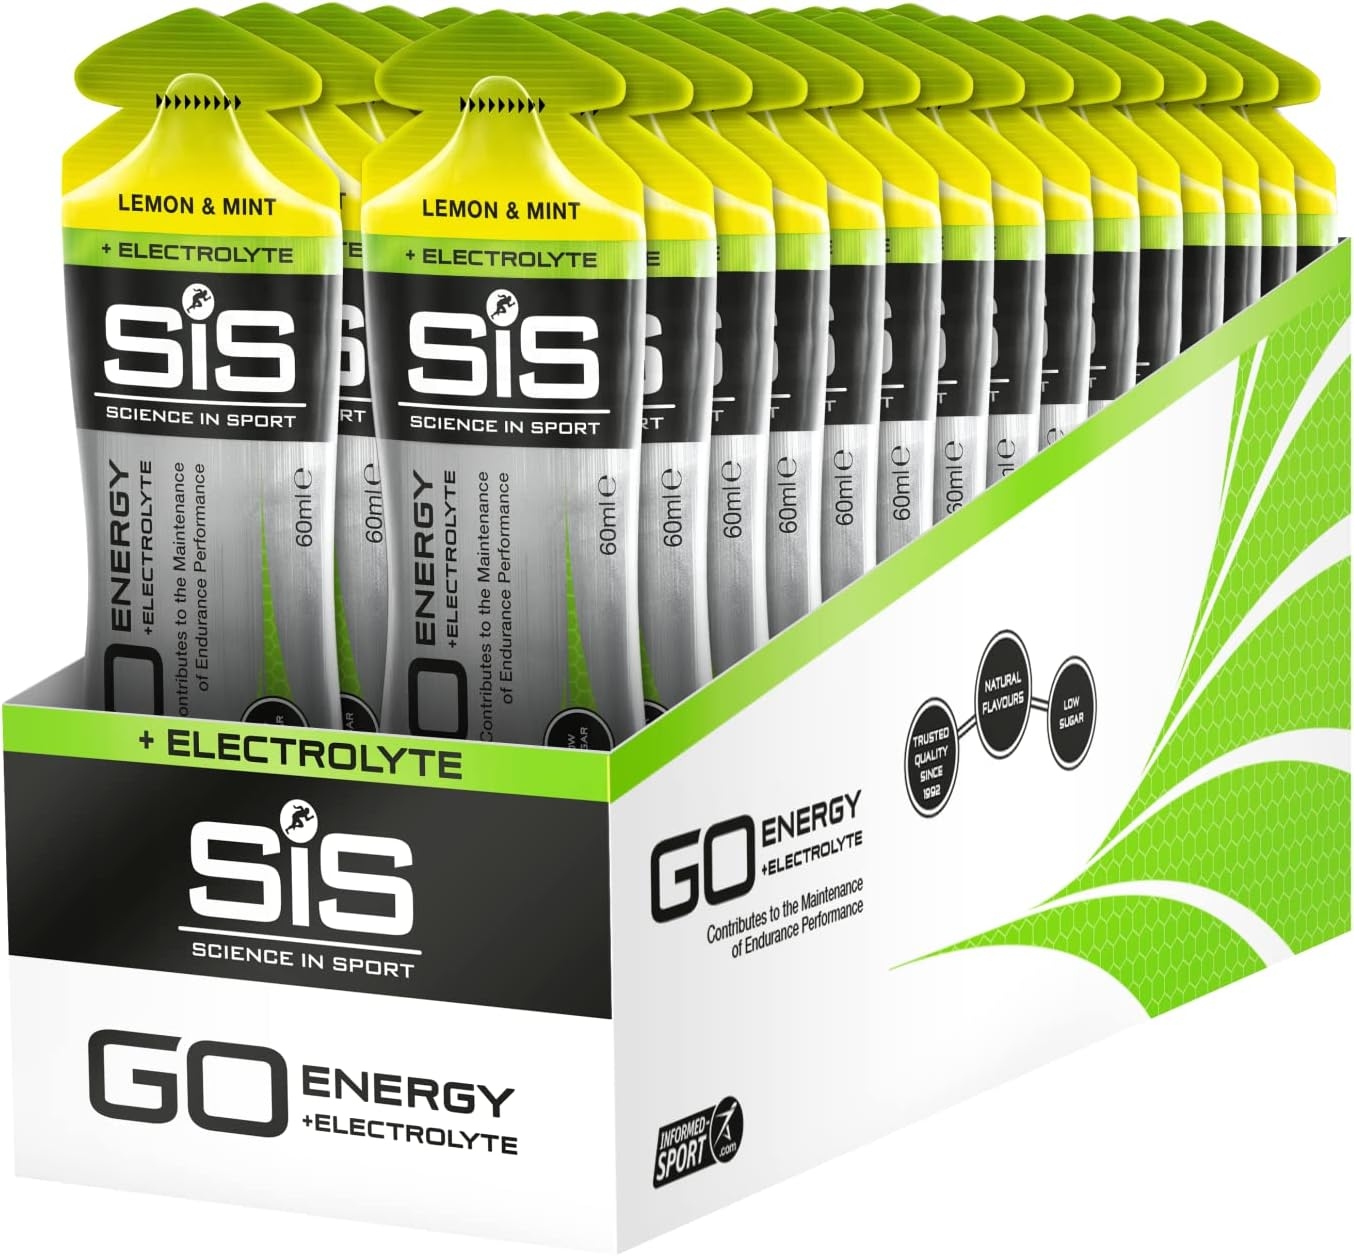 Science in Sport Energy Gel Pack, SIS Energy Gel + Electrolyte, 22g Fast Acting Carbs, Performance & Endurance Gels, Lemon & Mint Flavor - 2 Fl Oz (Pack of 30)